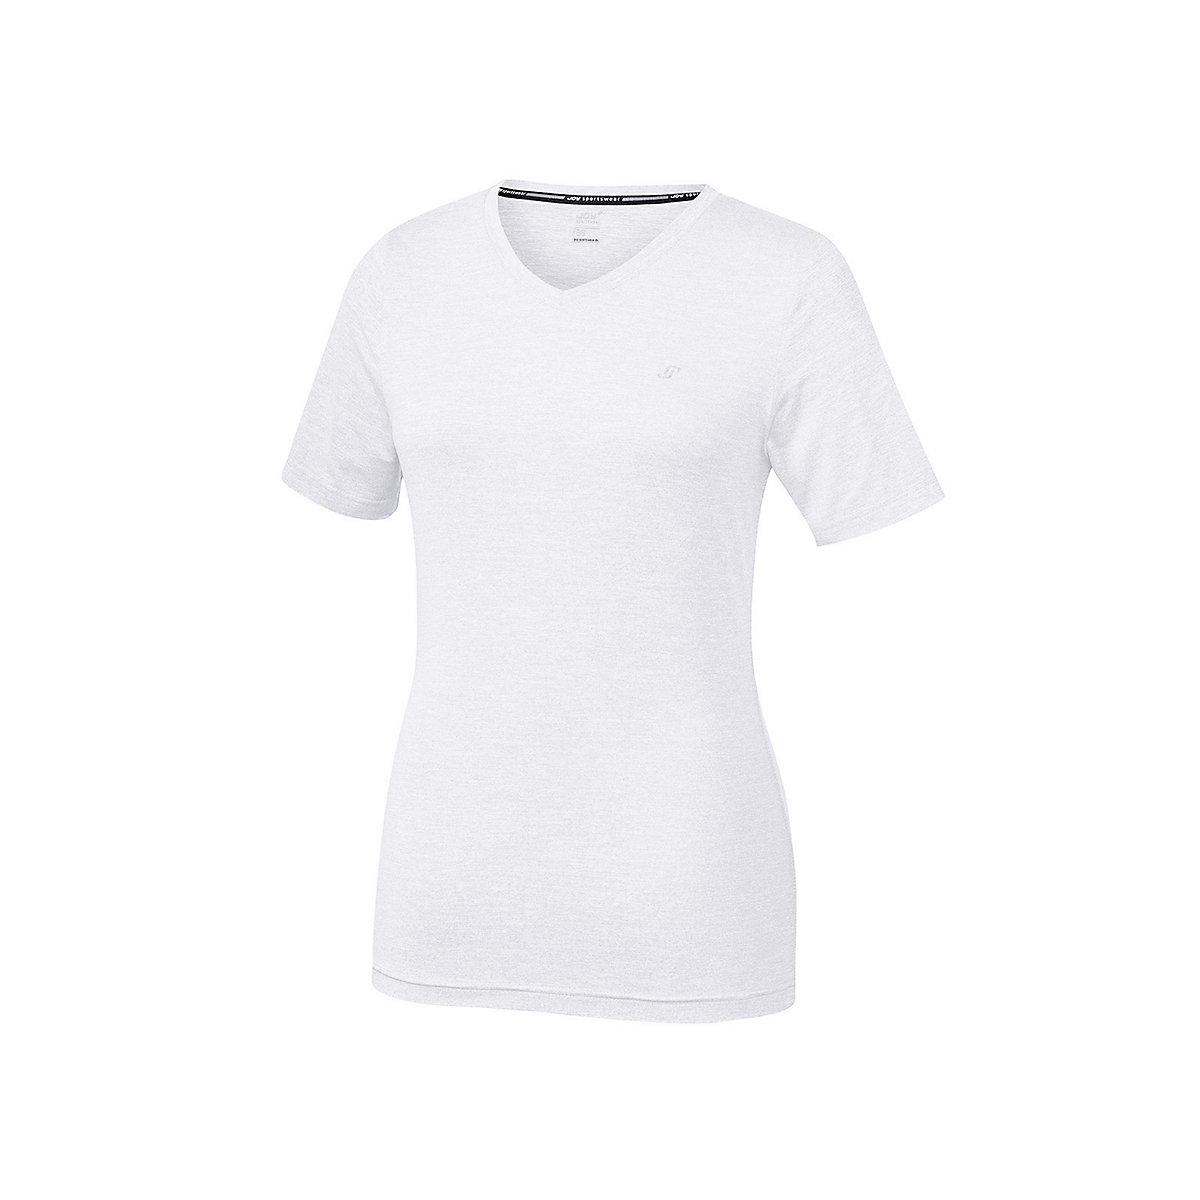 JOY sportswear T-Shirt für Mädchen weiß